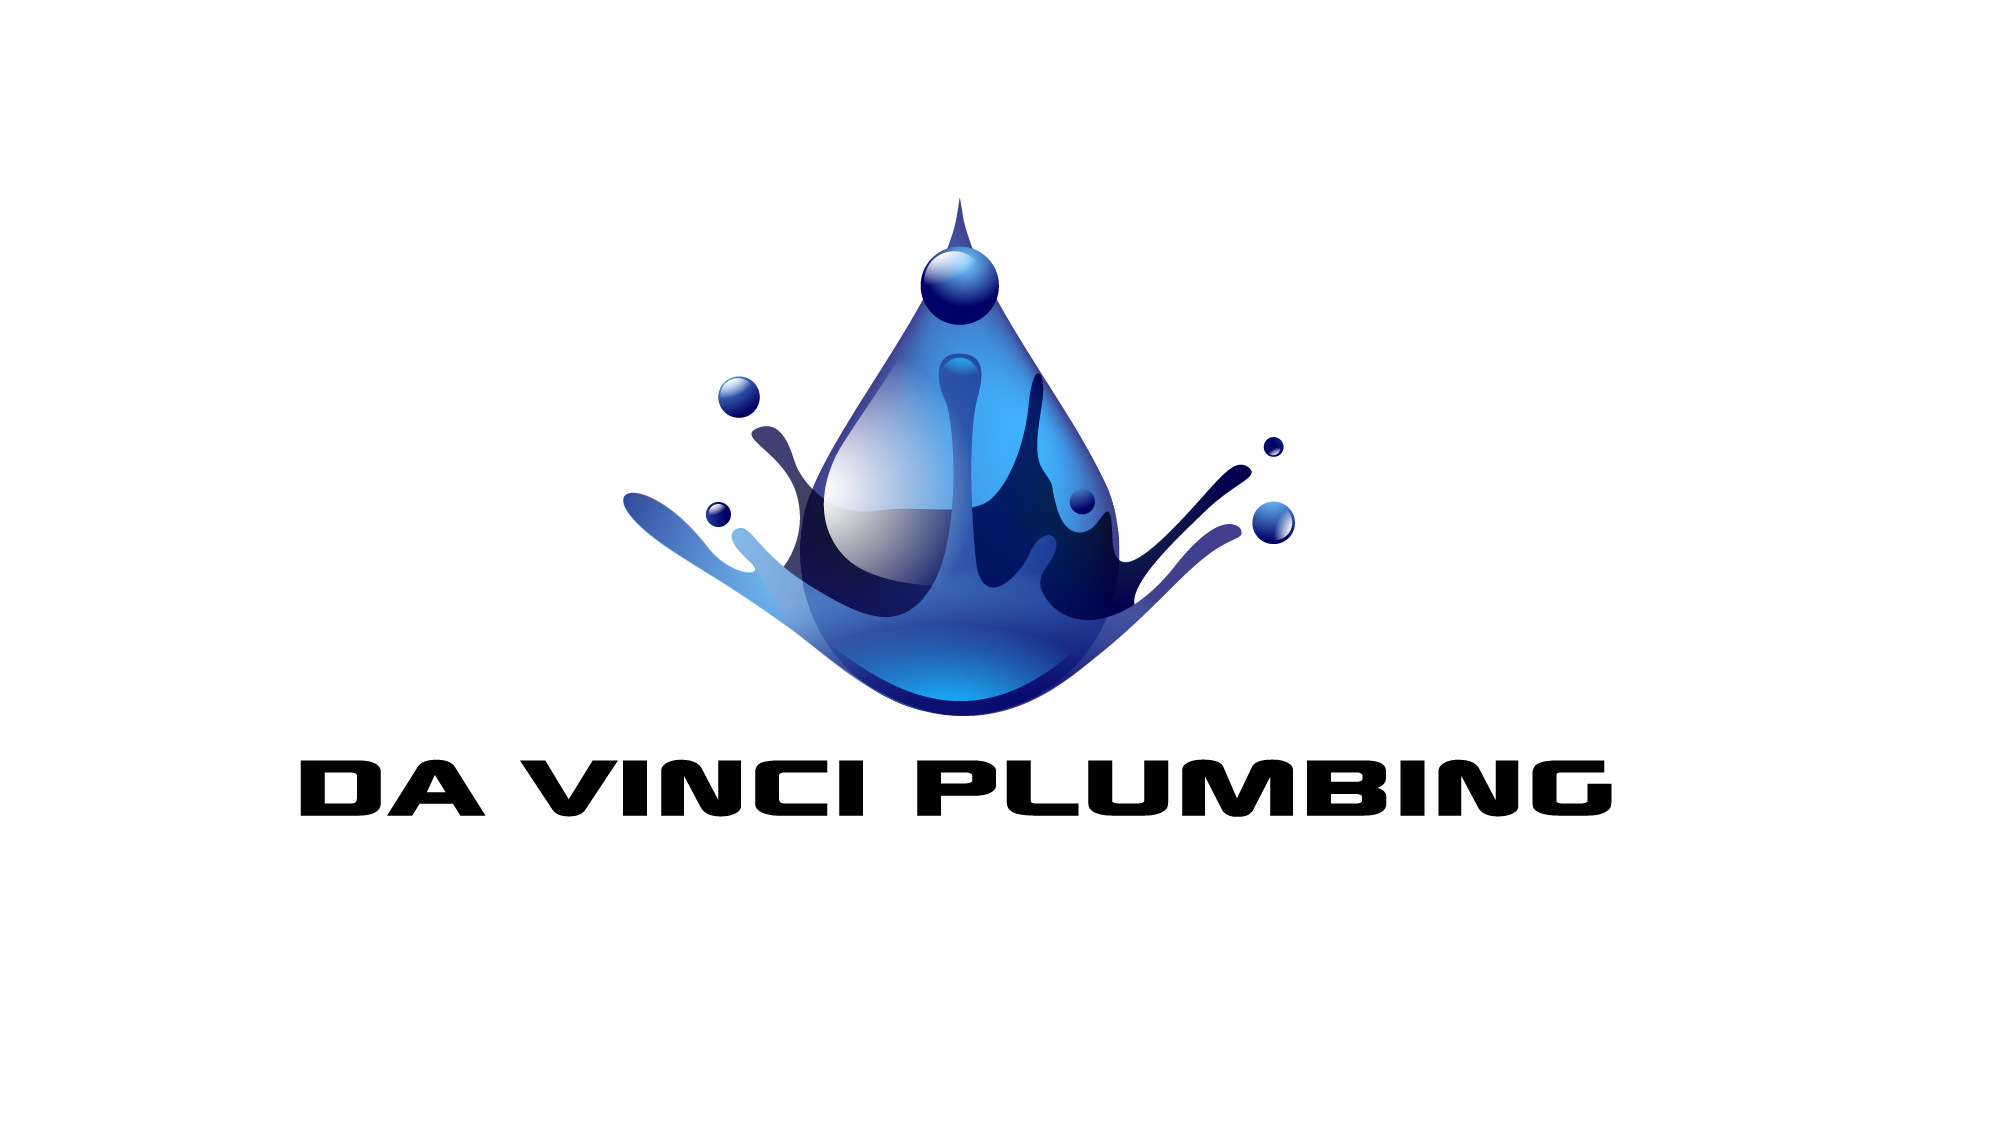 Da Vinci Plumbing Design & Consulting, LLC Logo